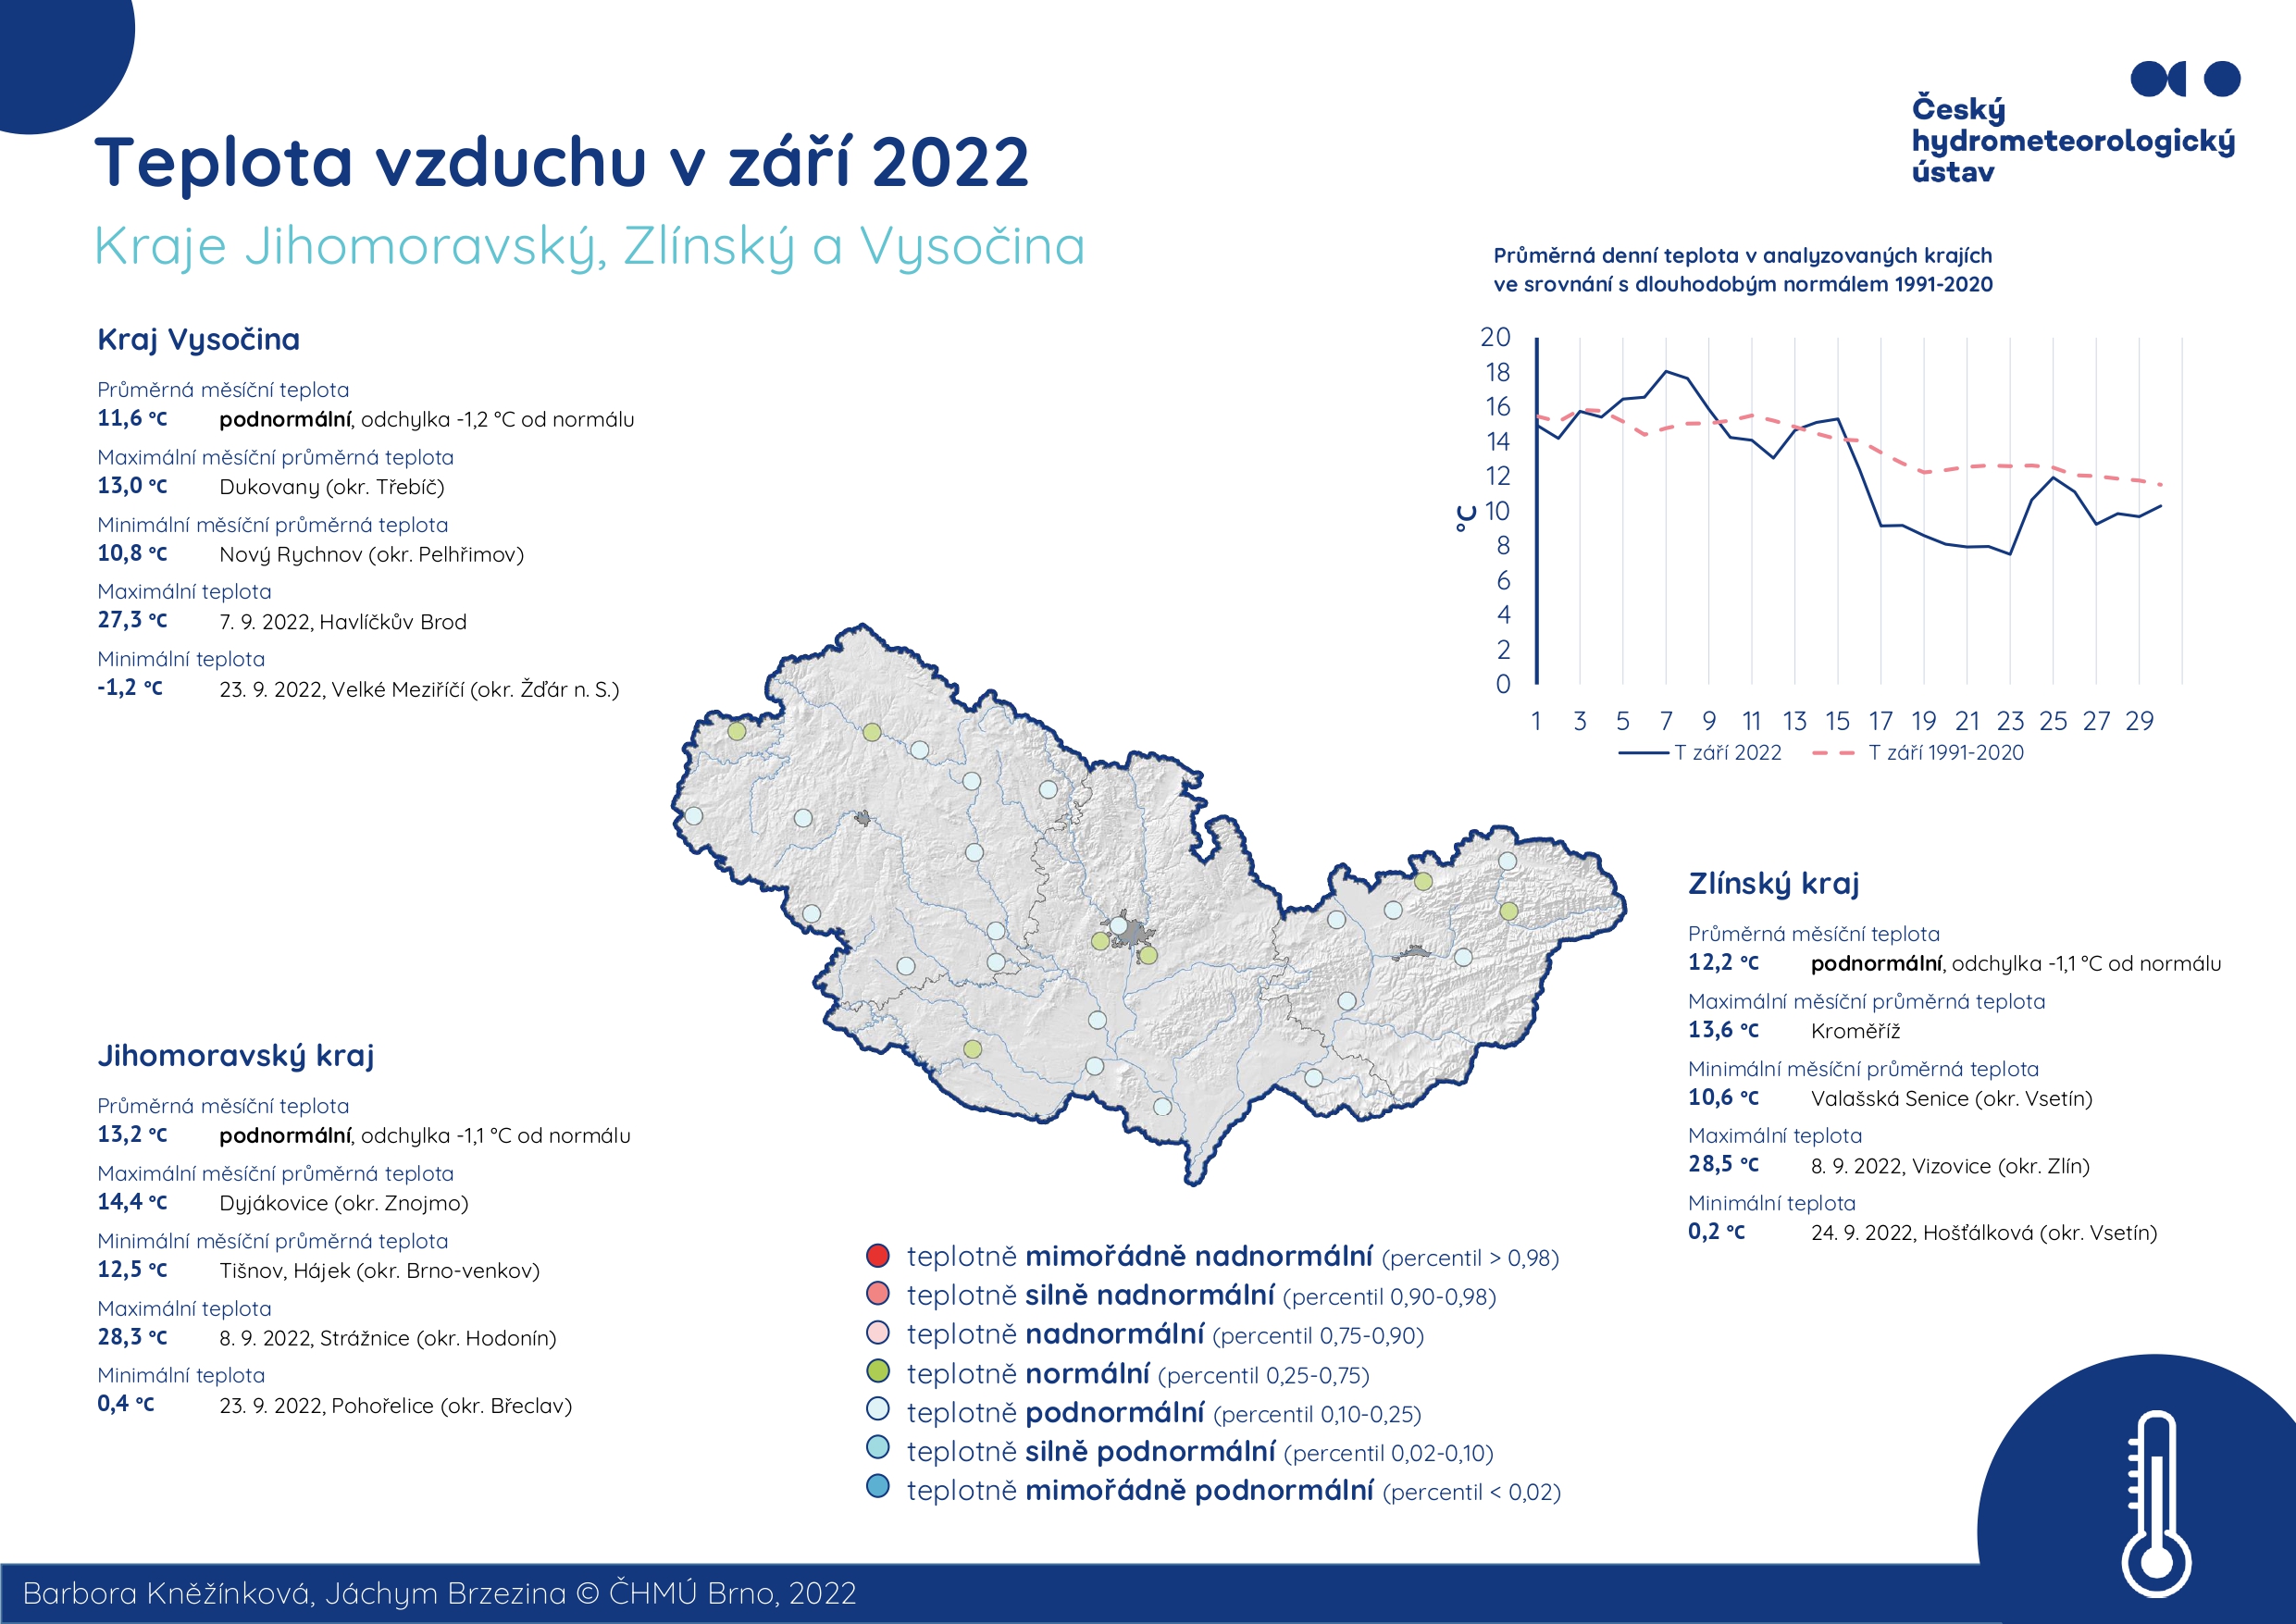 Teplota vzduchu v září 2022 – Jihomoravský kraj, Zlínský kraj a Kraj Vysočina1 min čtení